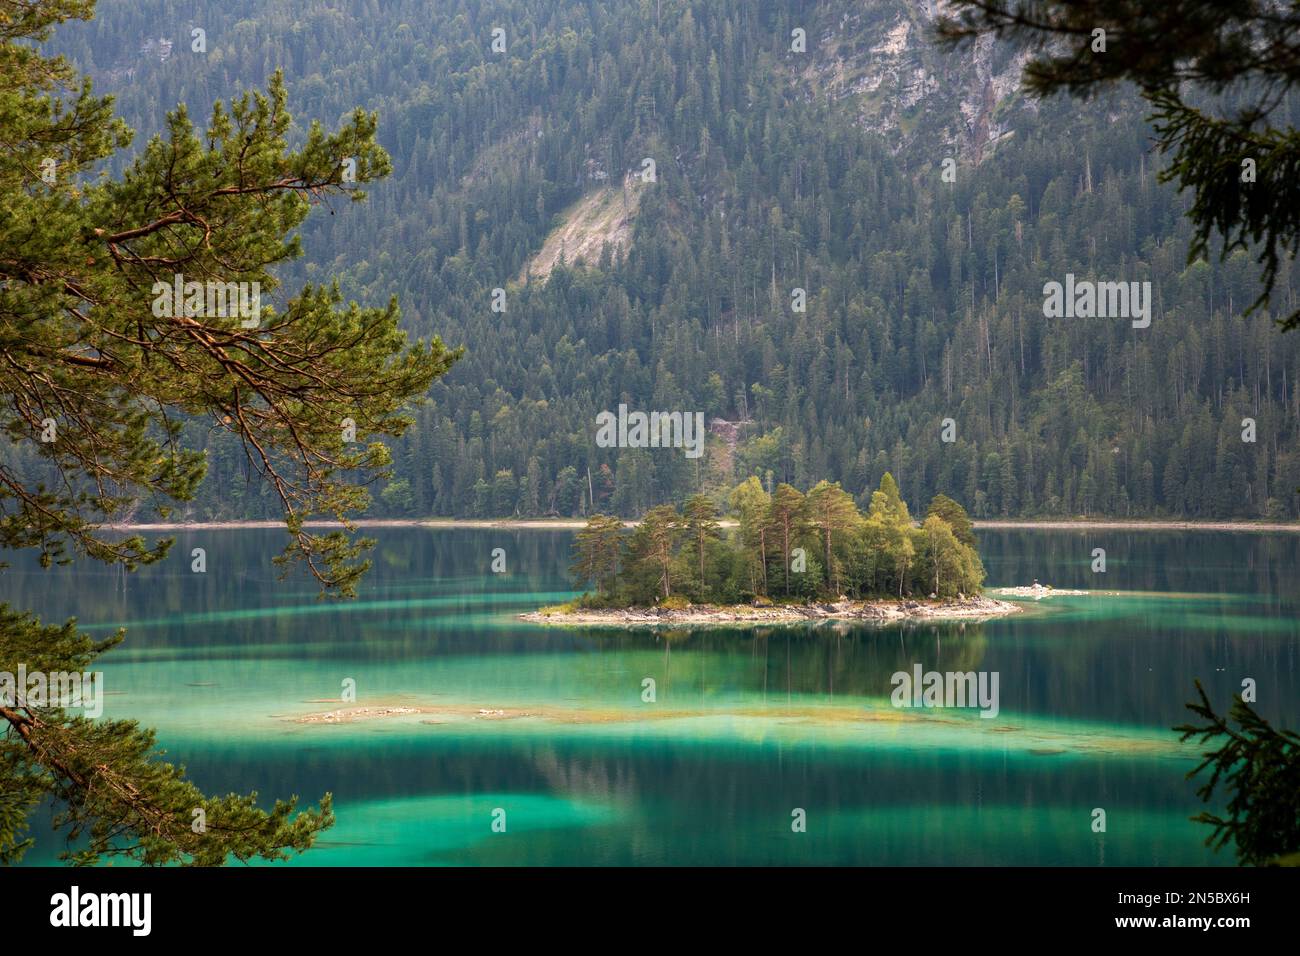 eibsee mit kleinen Inseln im türkisfarbenen Wasser, Deutschland, Bayern, Grainau Stockfoto